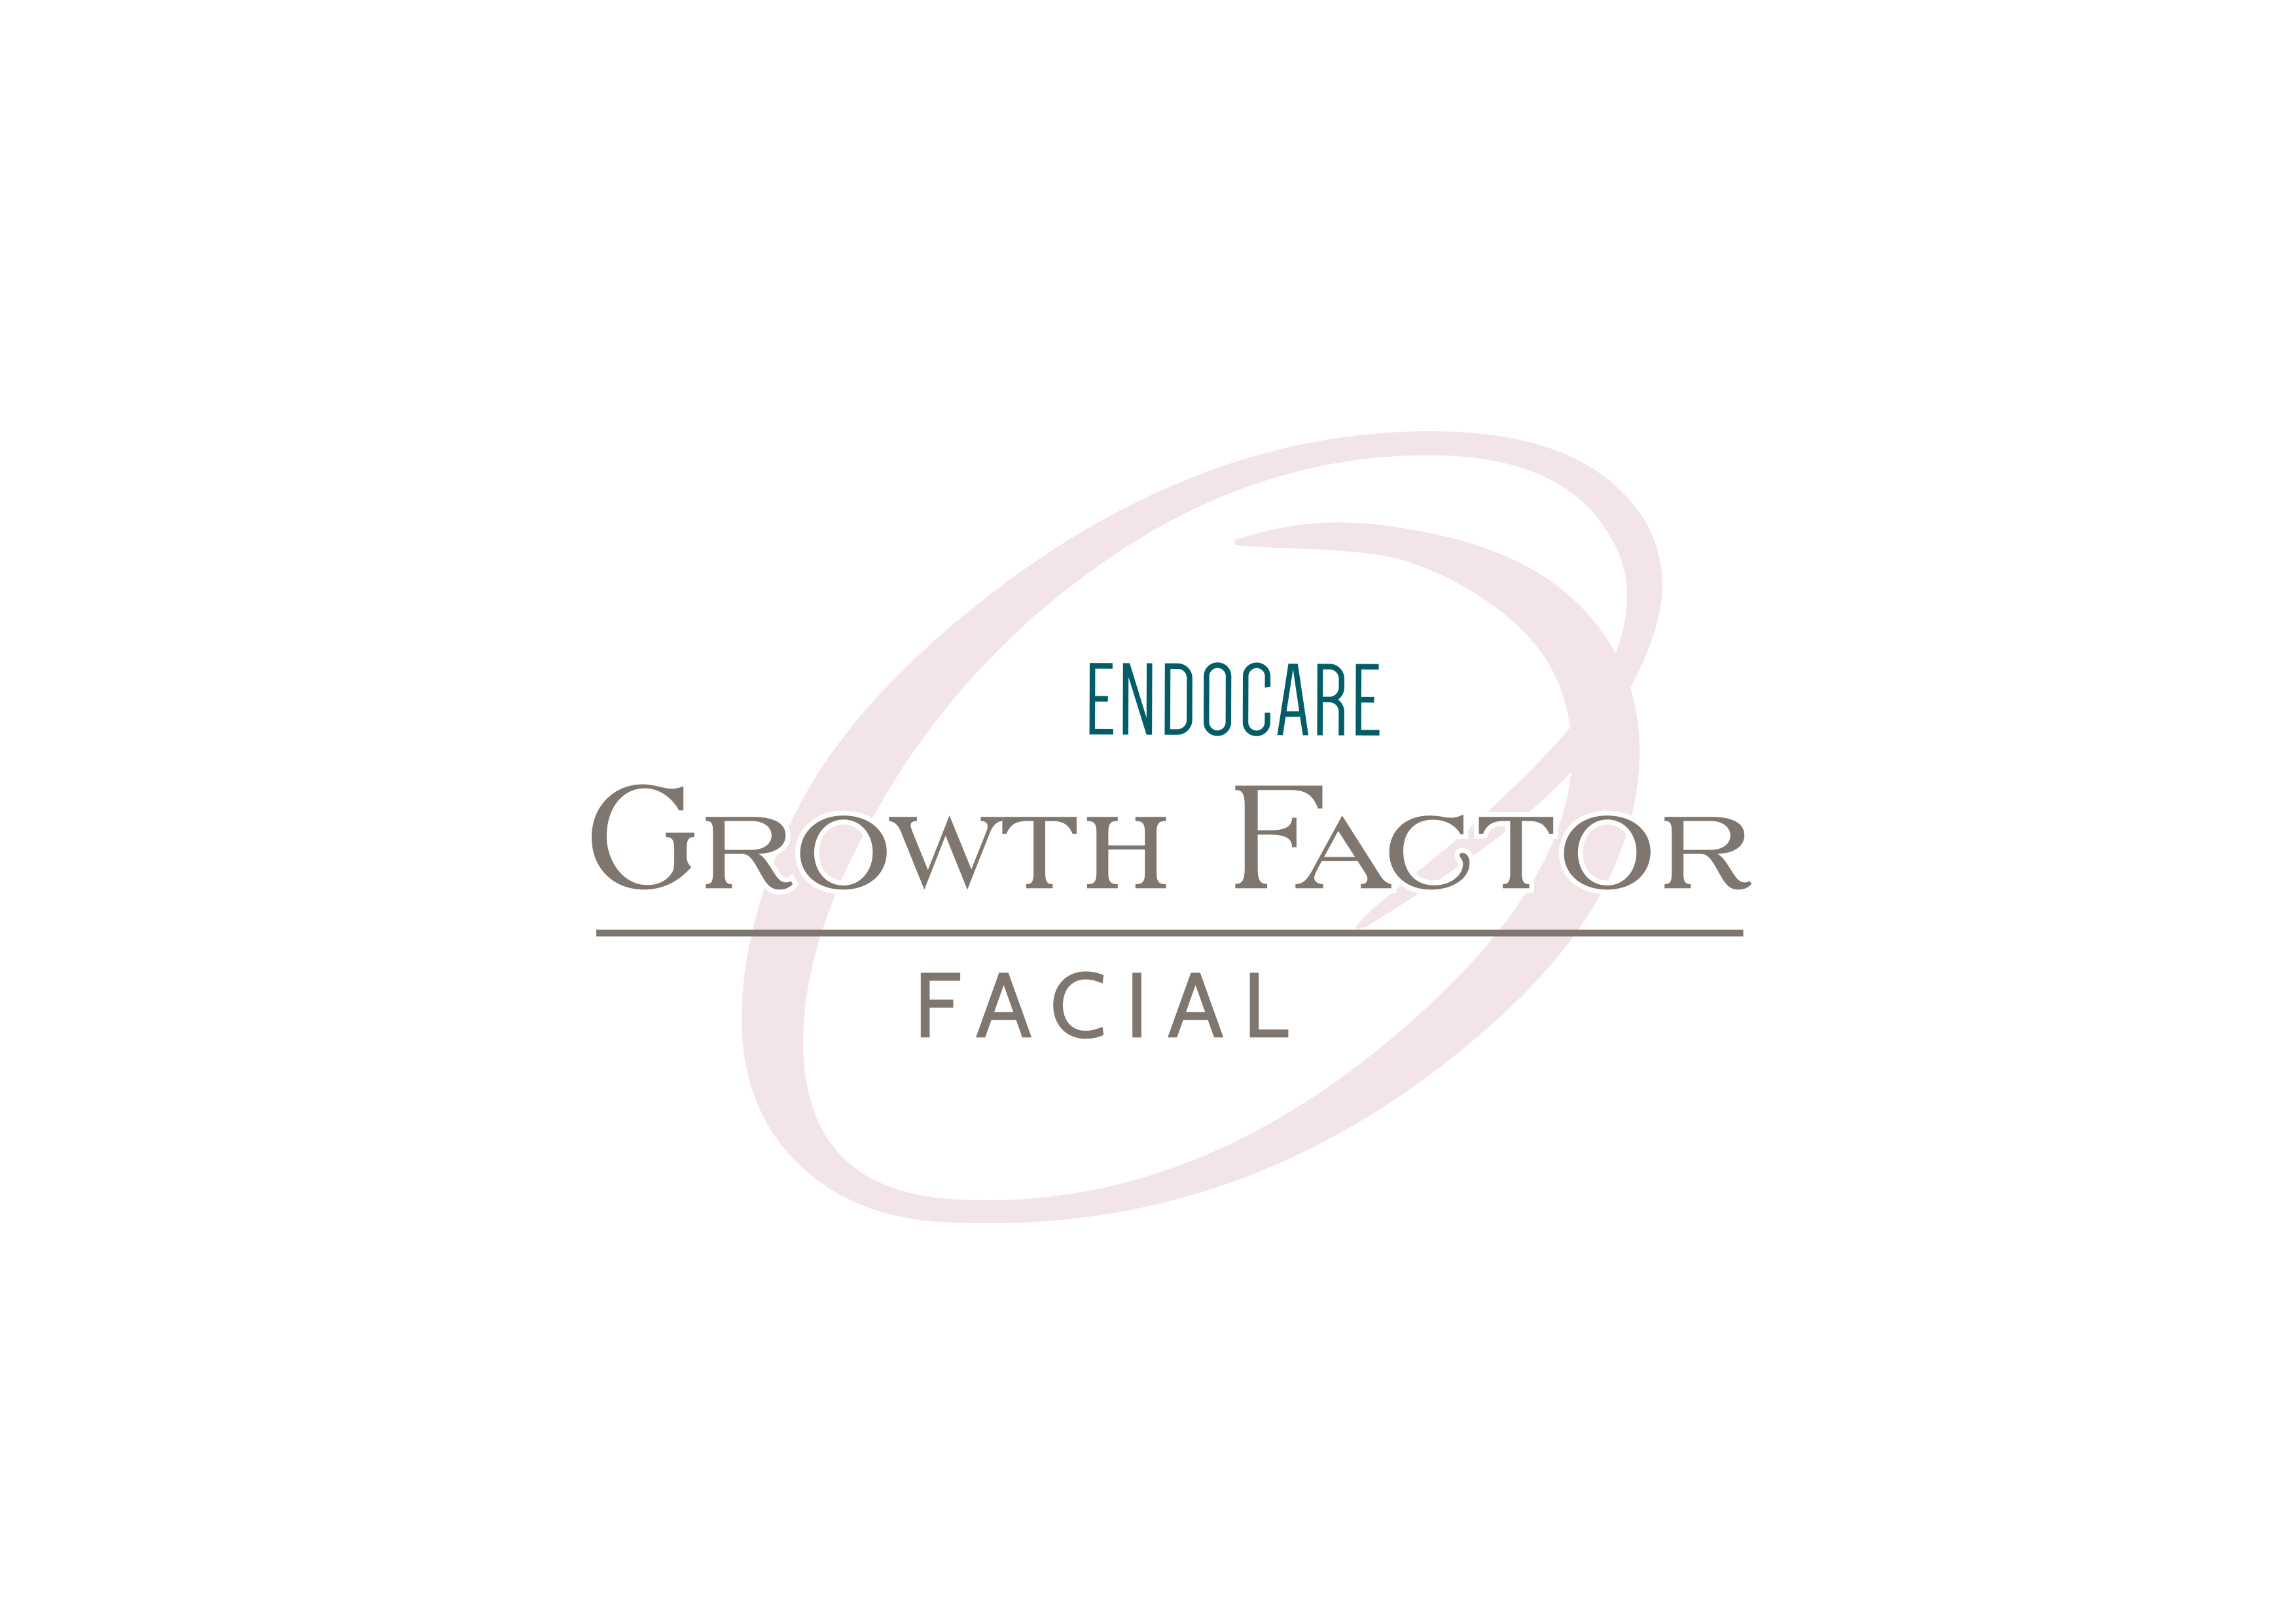 Endocare Growth Factor Facial logo